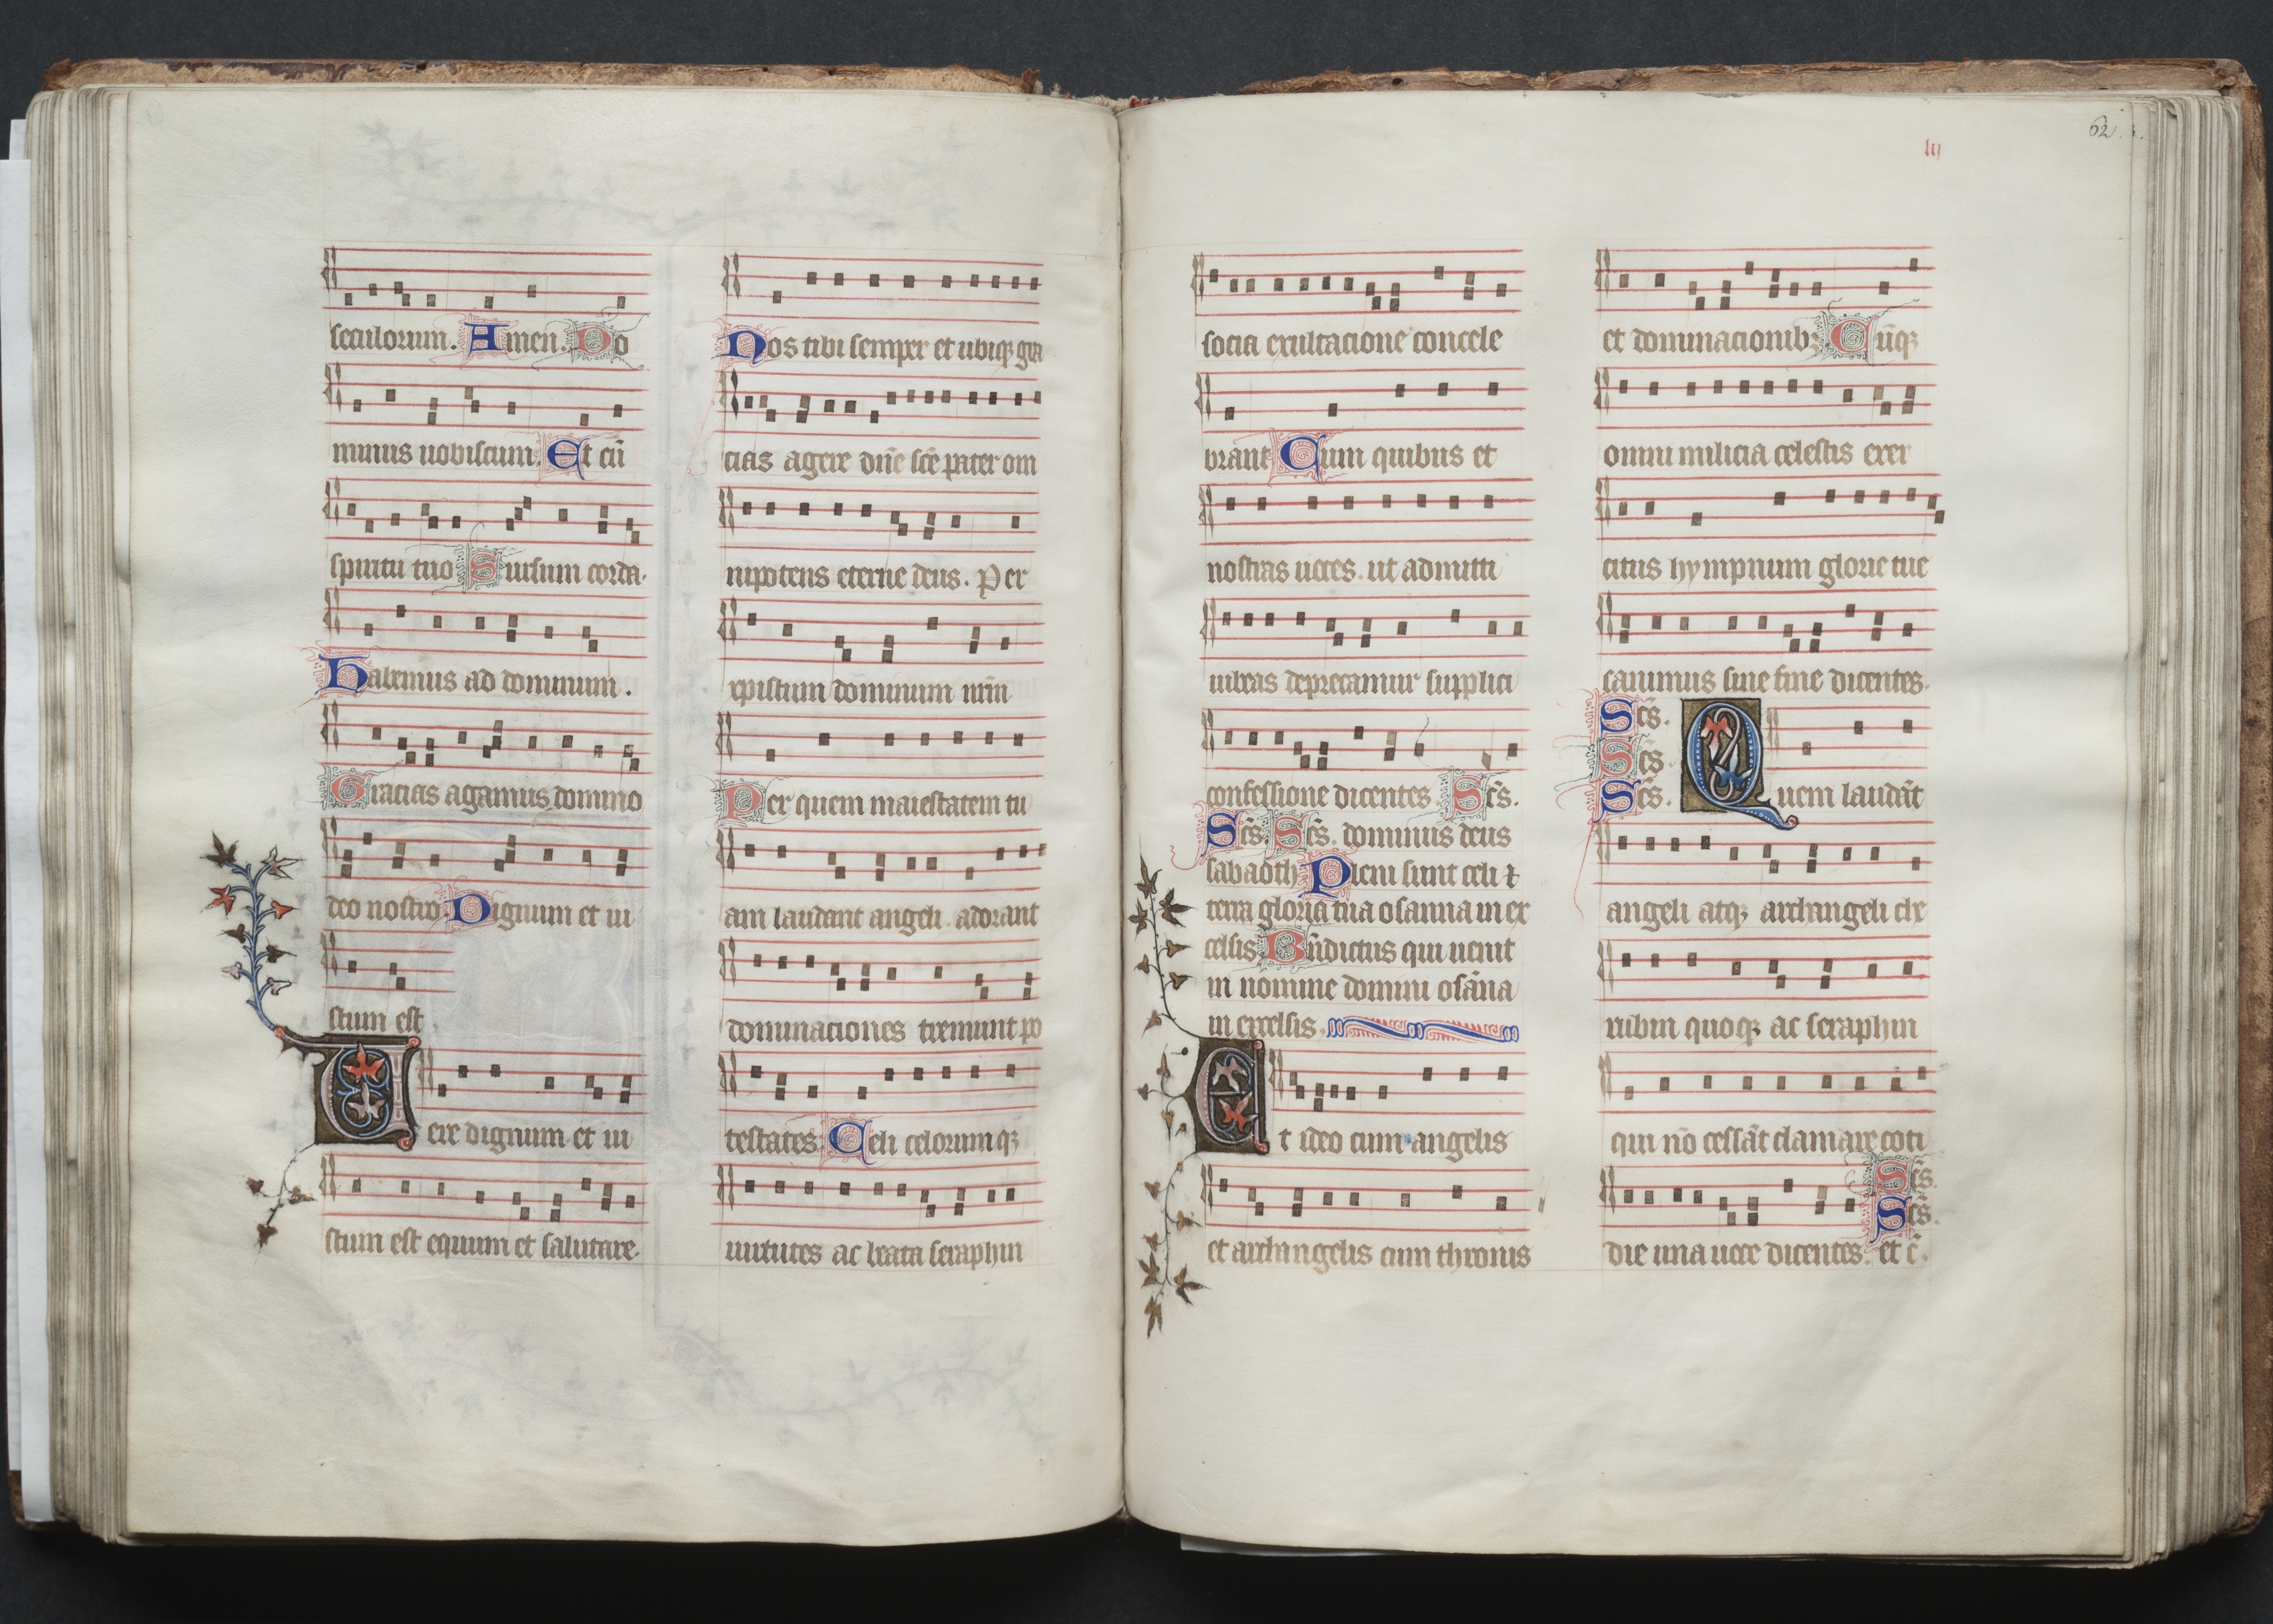 The Gotha Missal:  Fol. 62r, Text